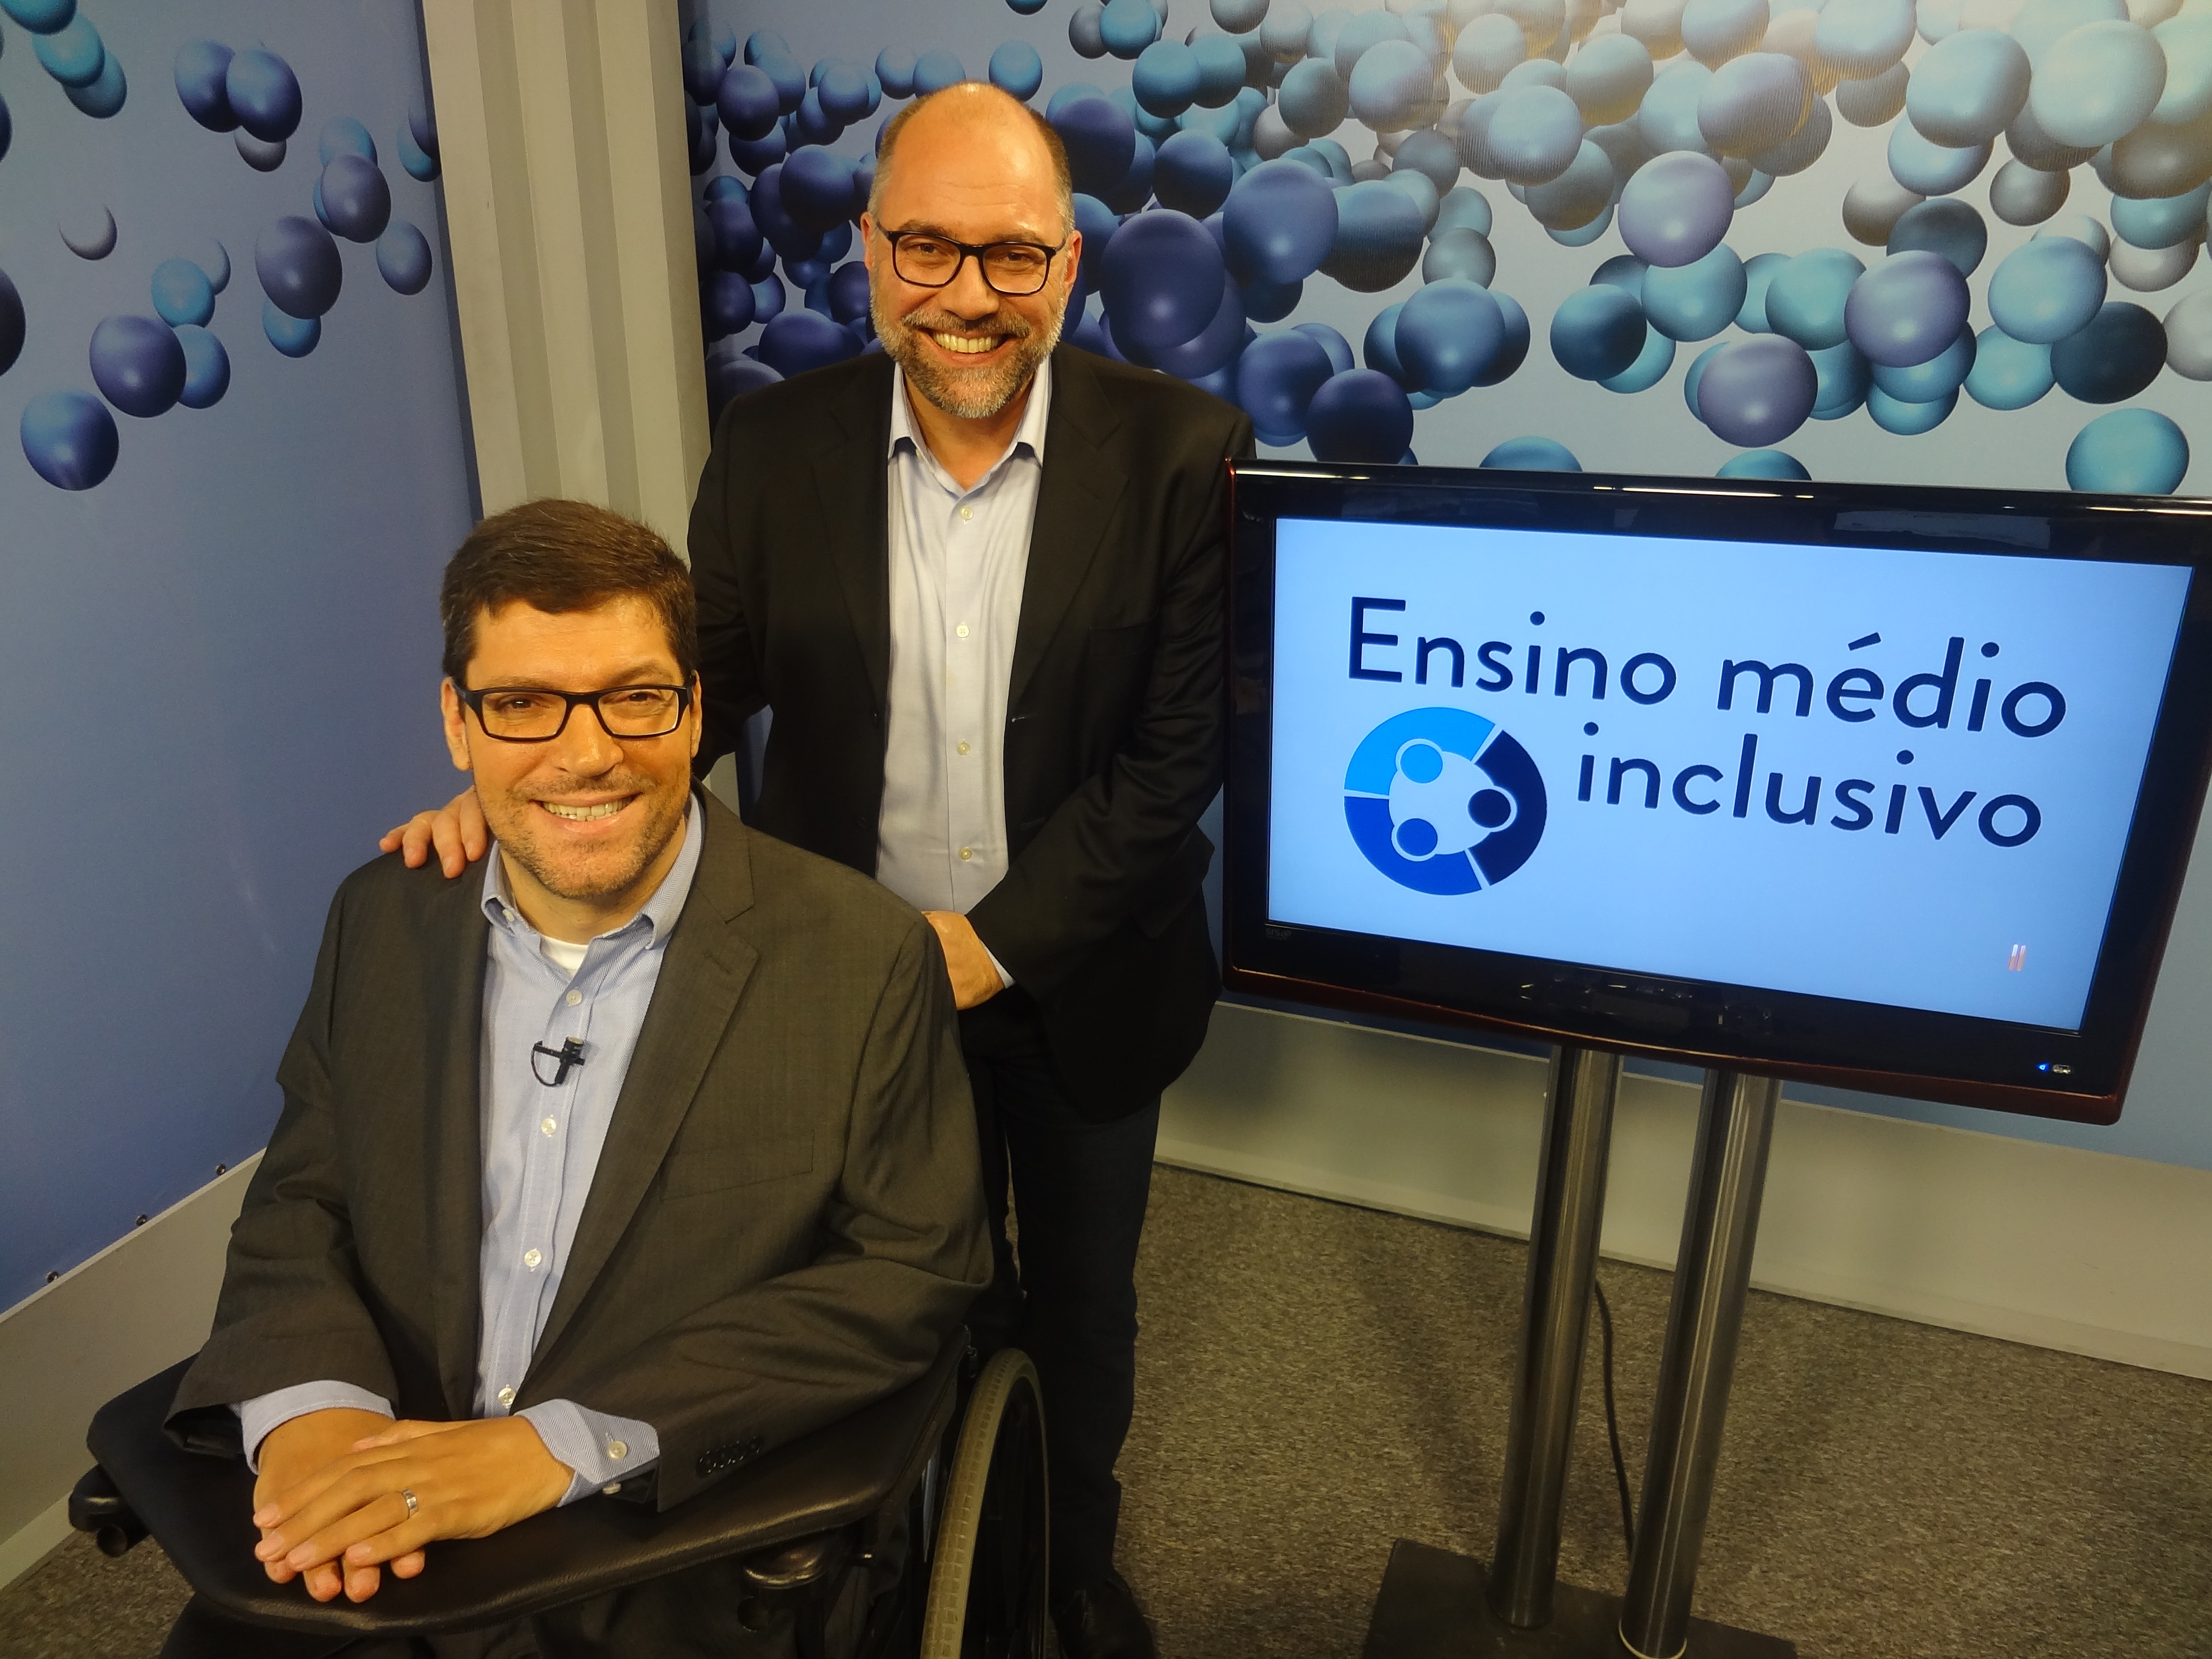 Rodrigo Hübner Mendes e Ricardo Henriques sorriem, ao lado televisão com o logo do Ensino médio inclusivo